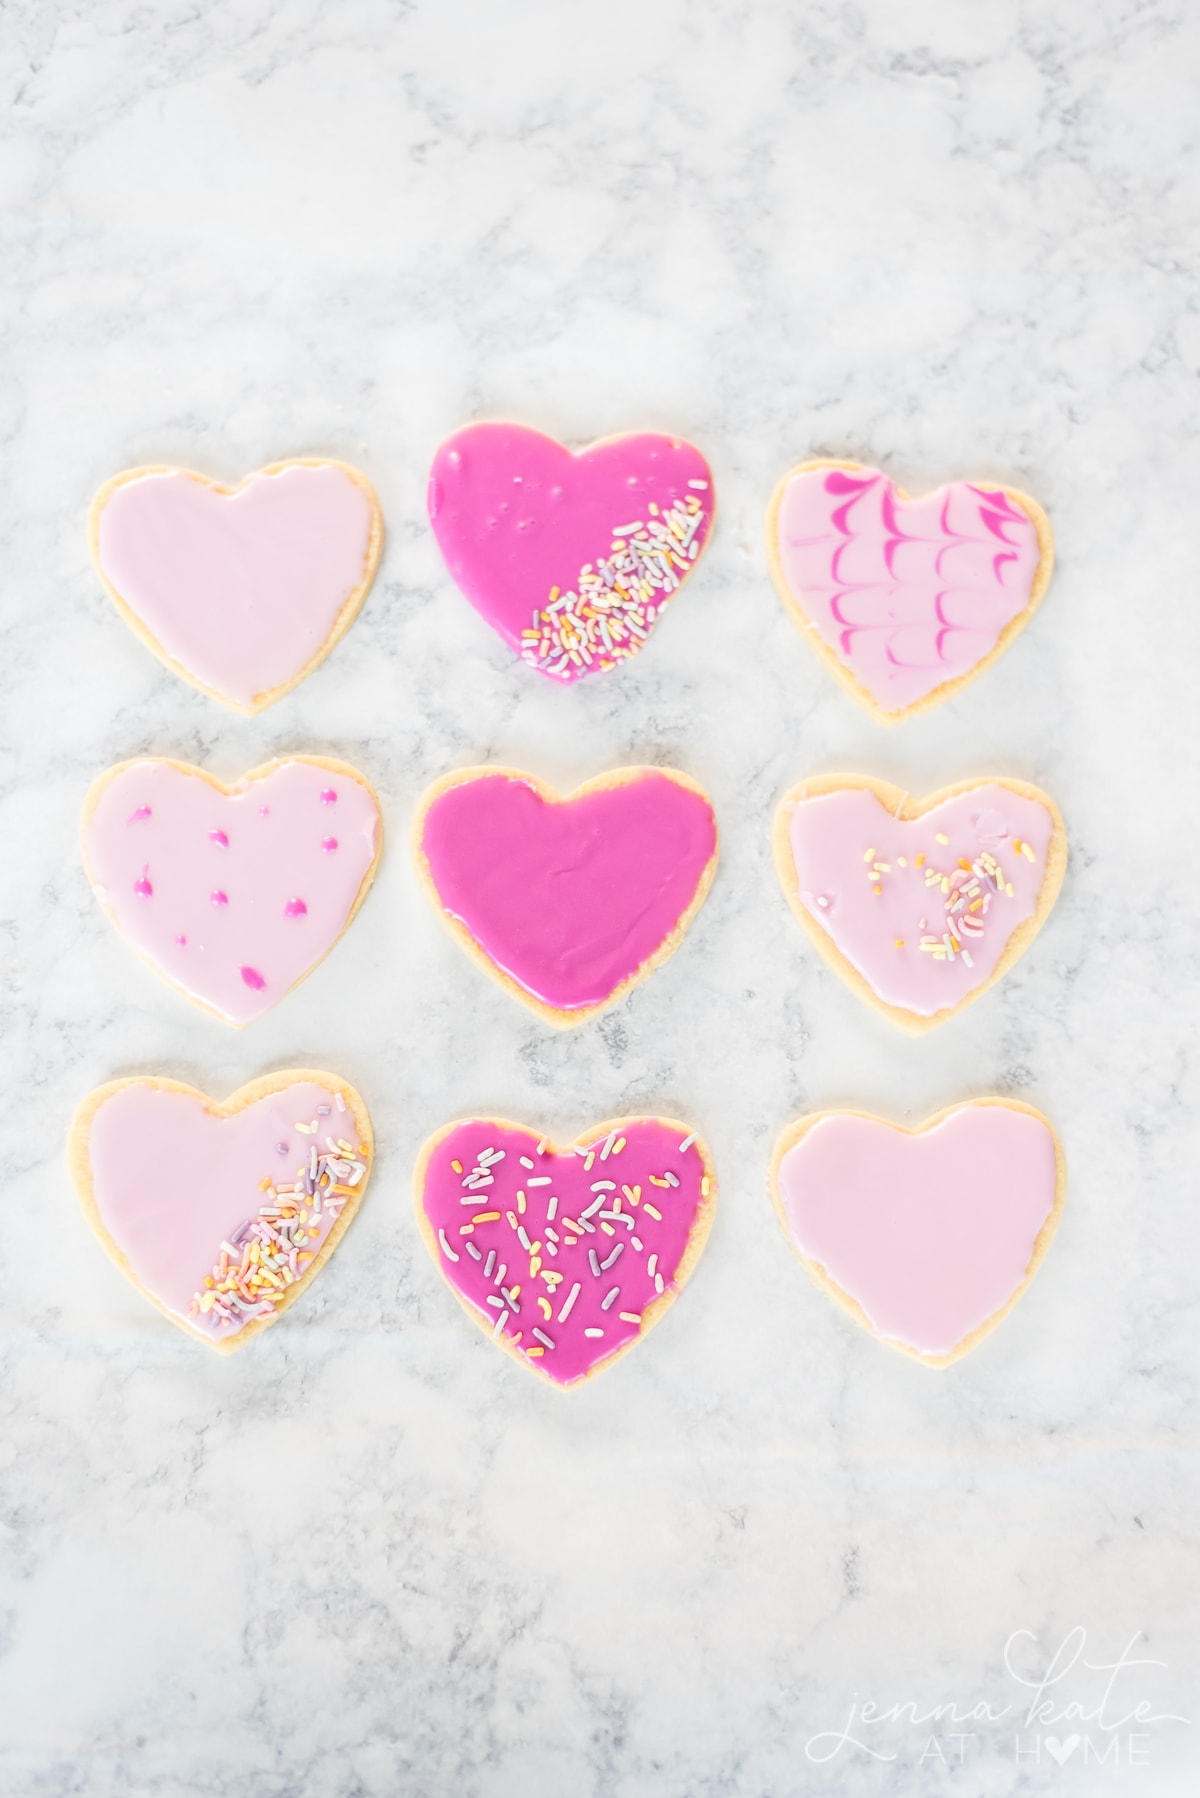 Simple Valentine’s Sugar Cookies